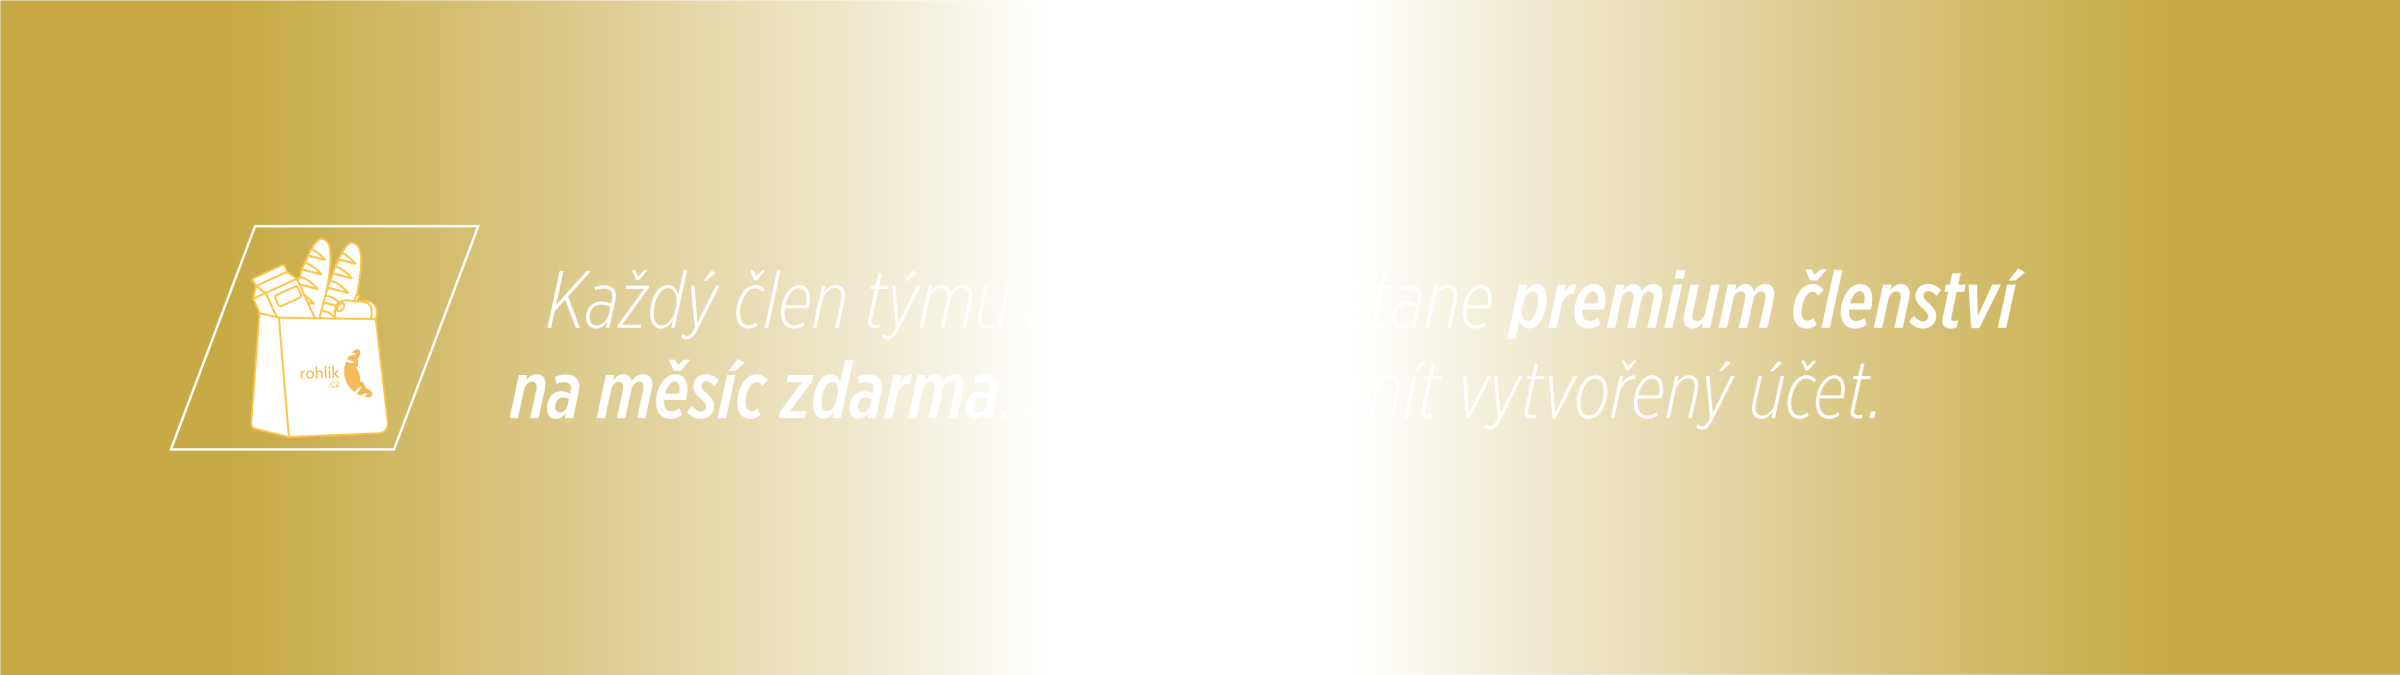 Benefity týmu rohlik.cz